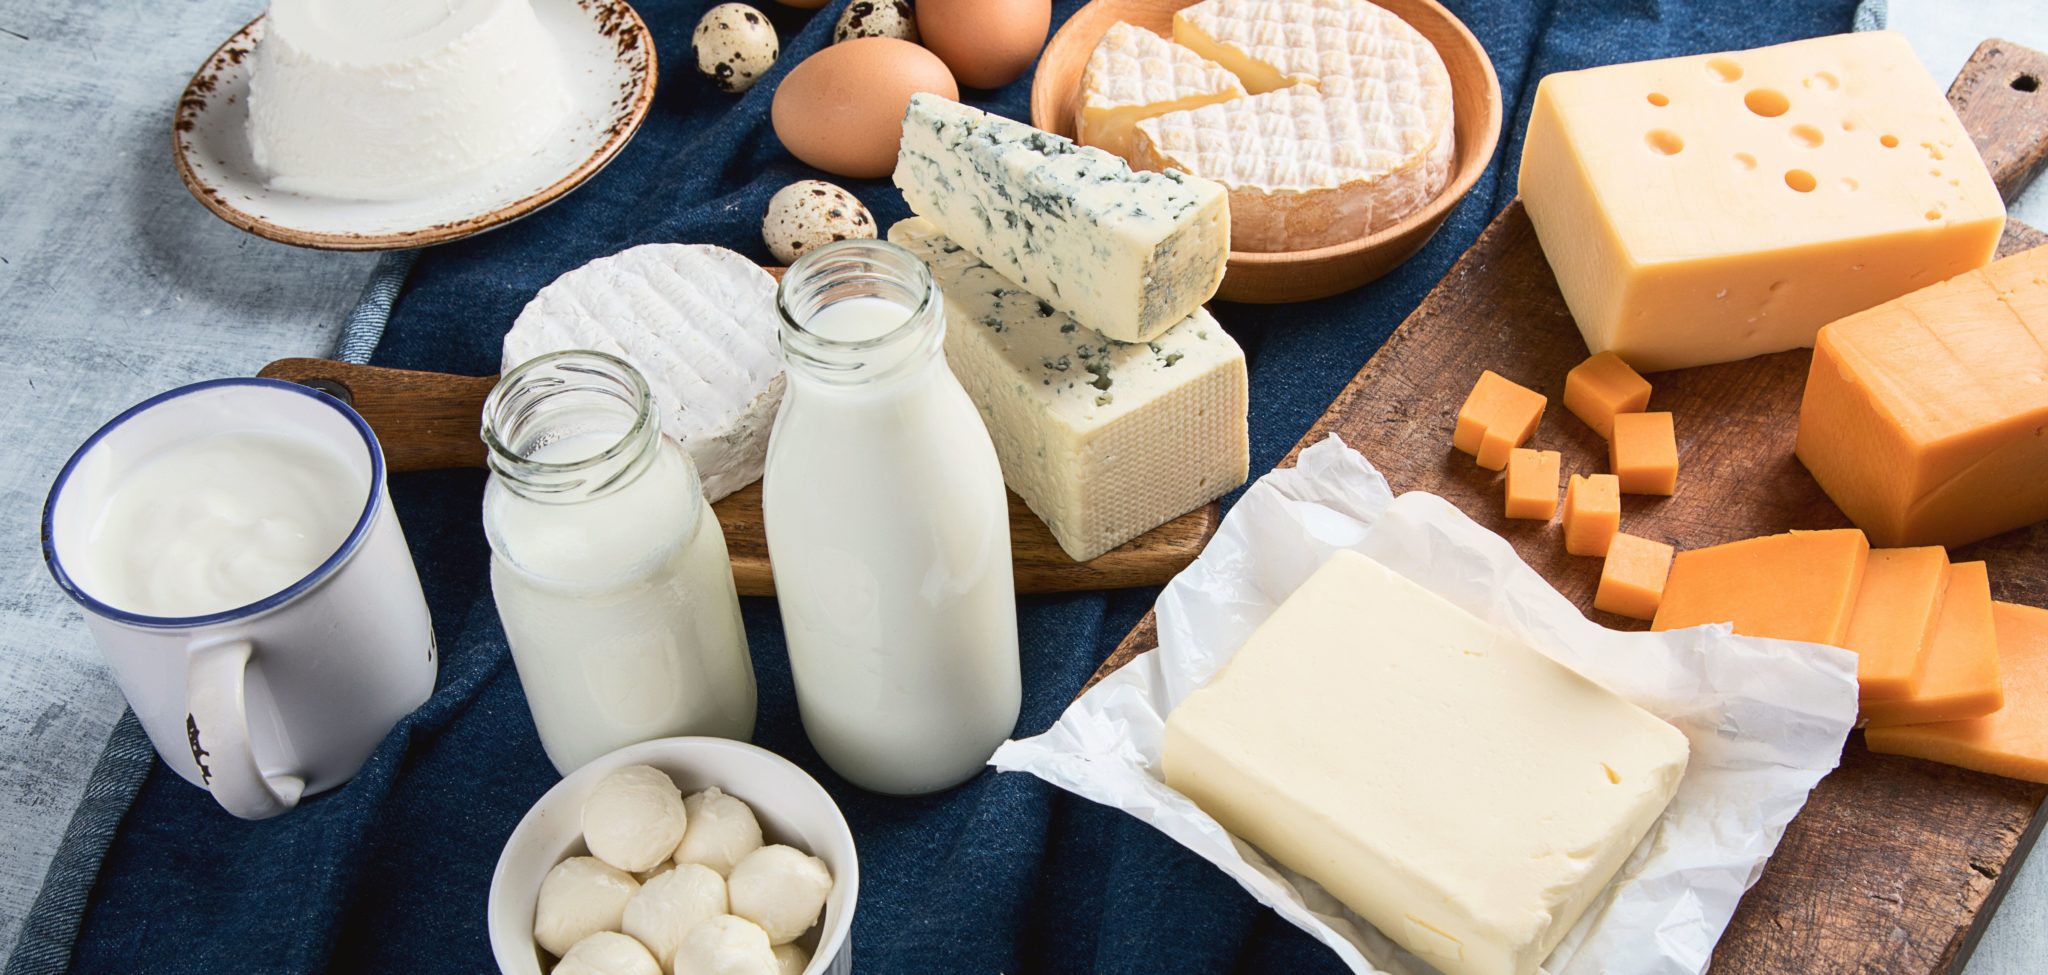 Лечения молочными и кисломолочными продуктами питания – бифилакт БИОТА